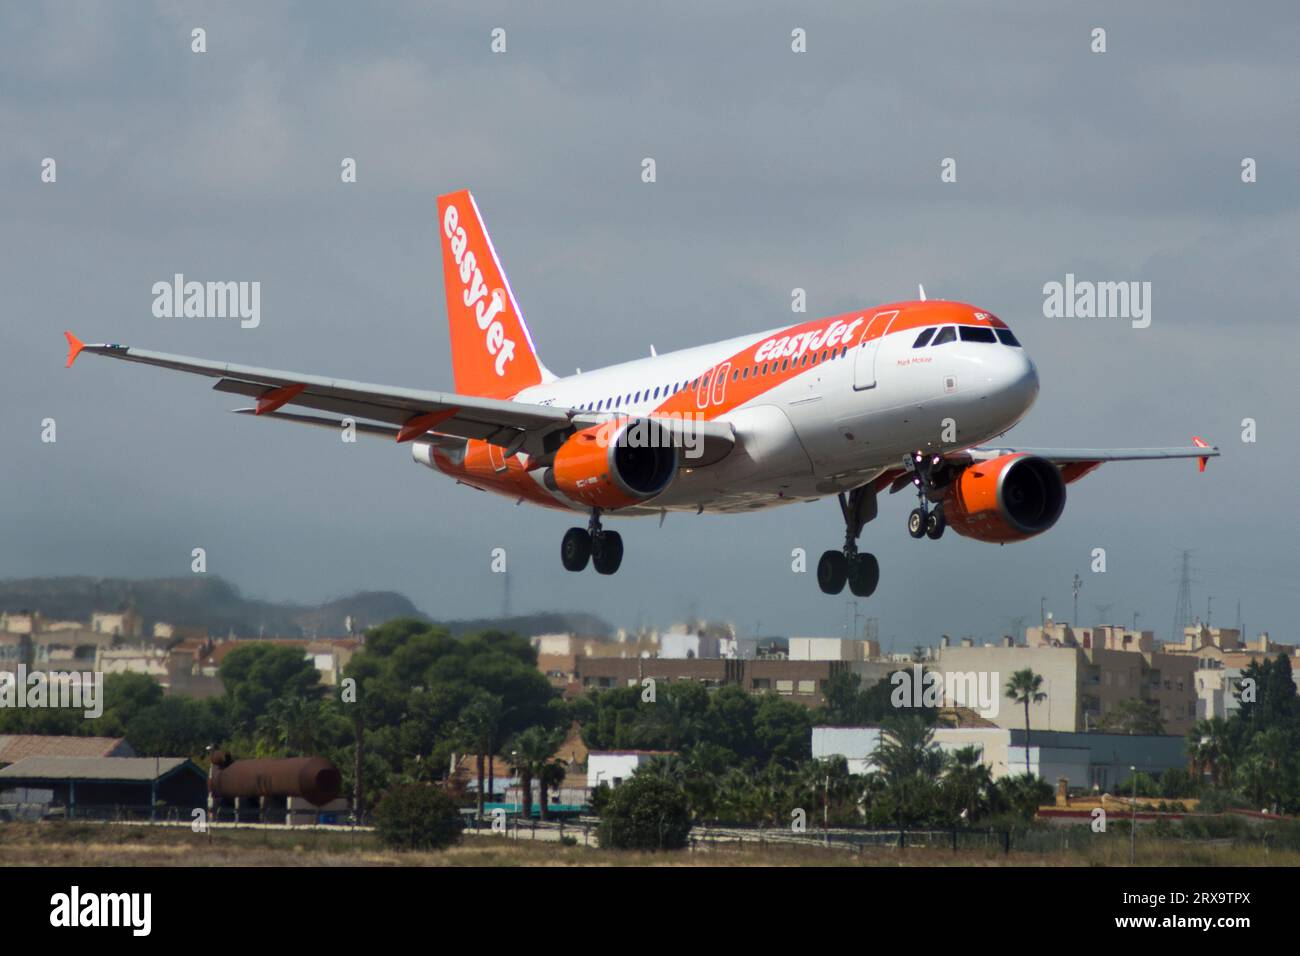 Avión de línea Airbus A319 de la aerolínea Easyjet aterrizando Stock Photo